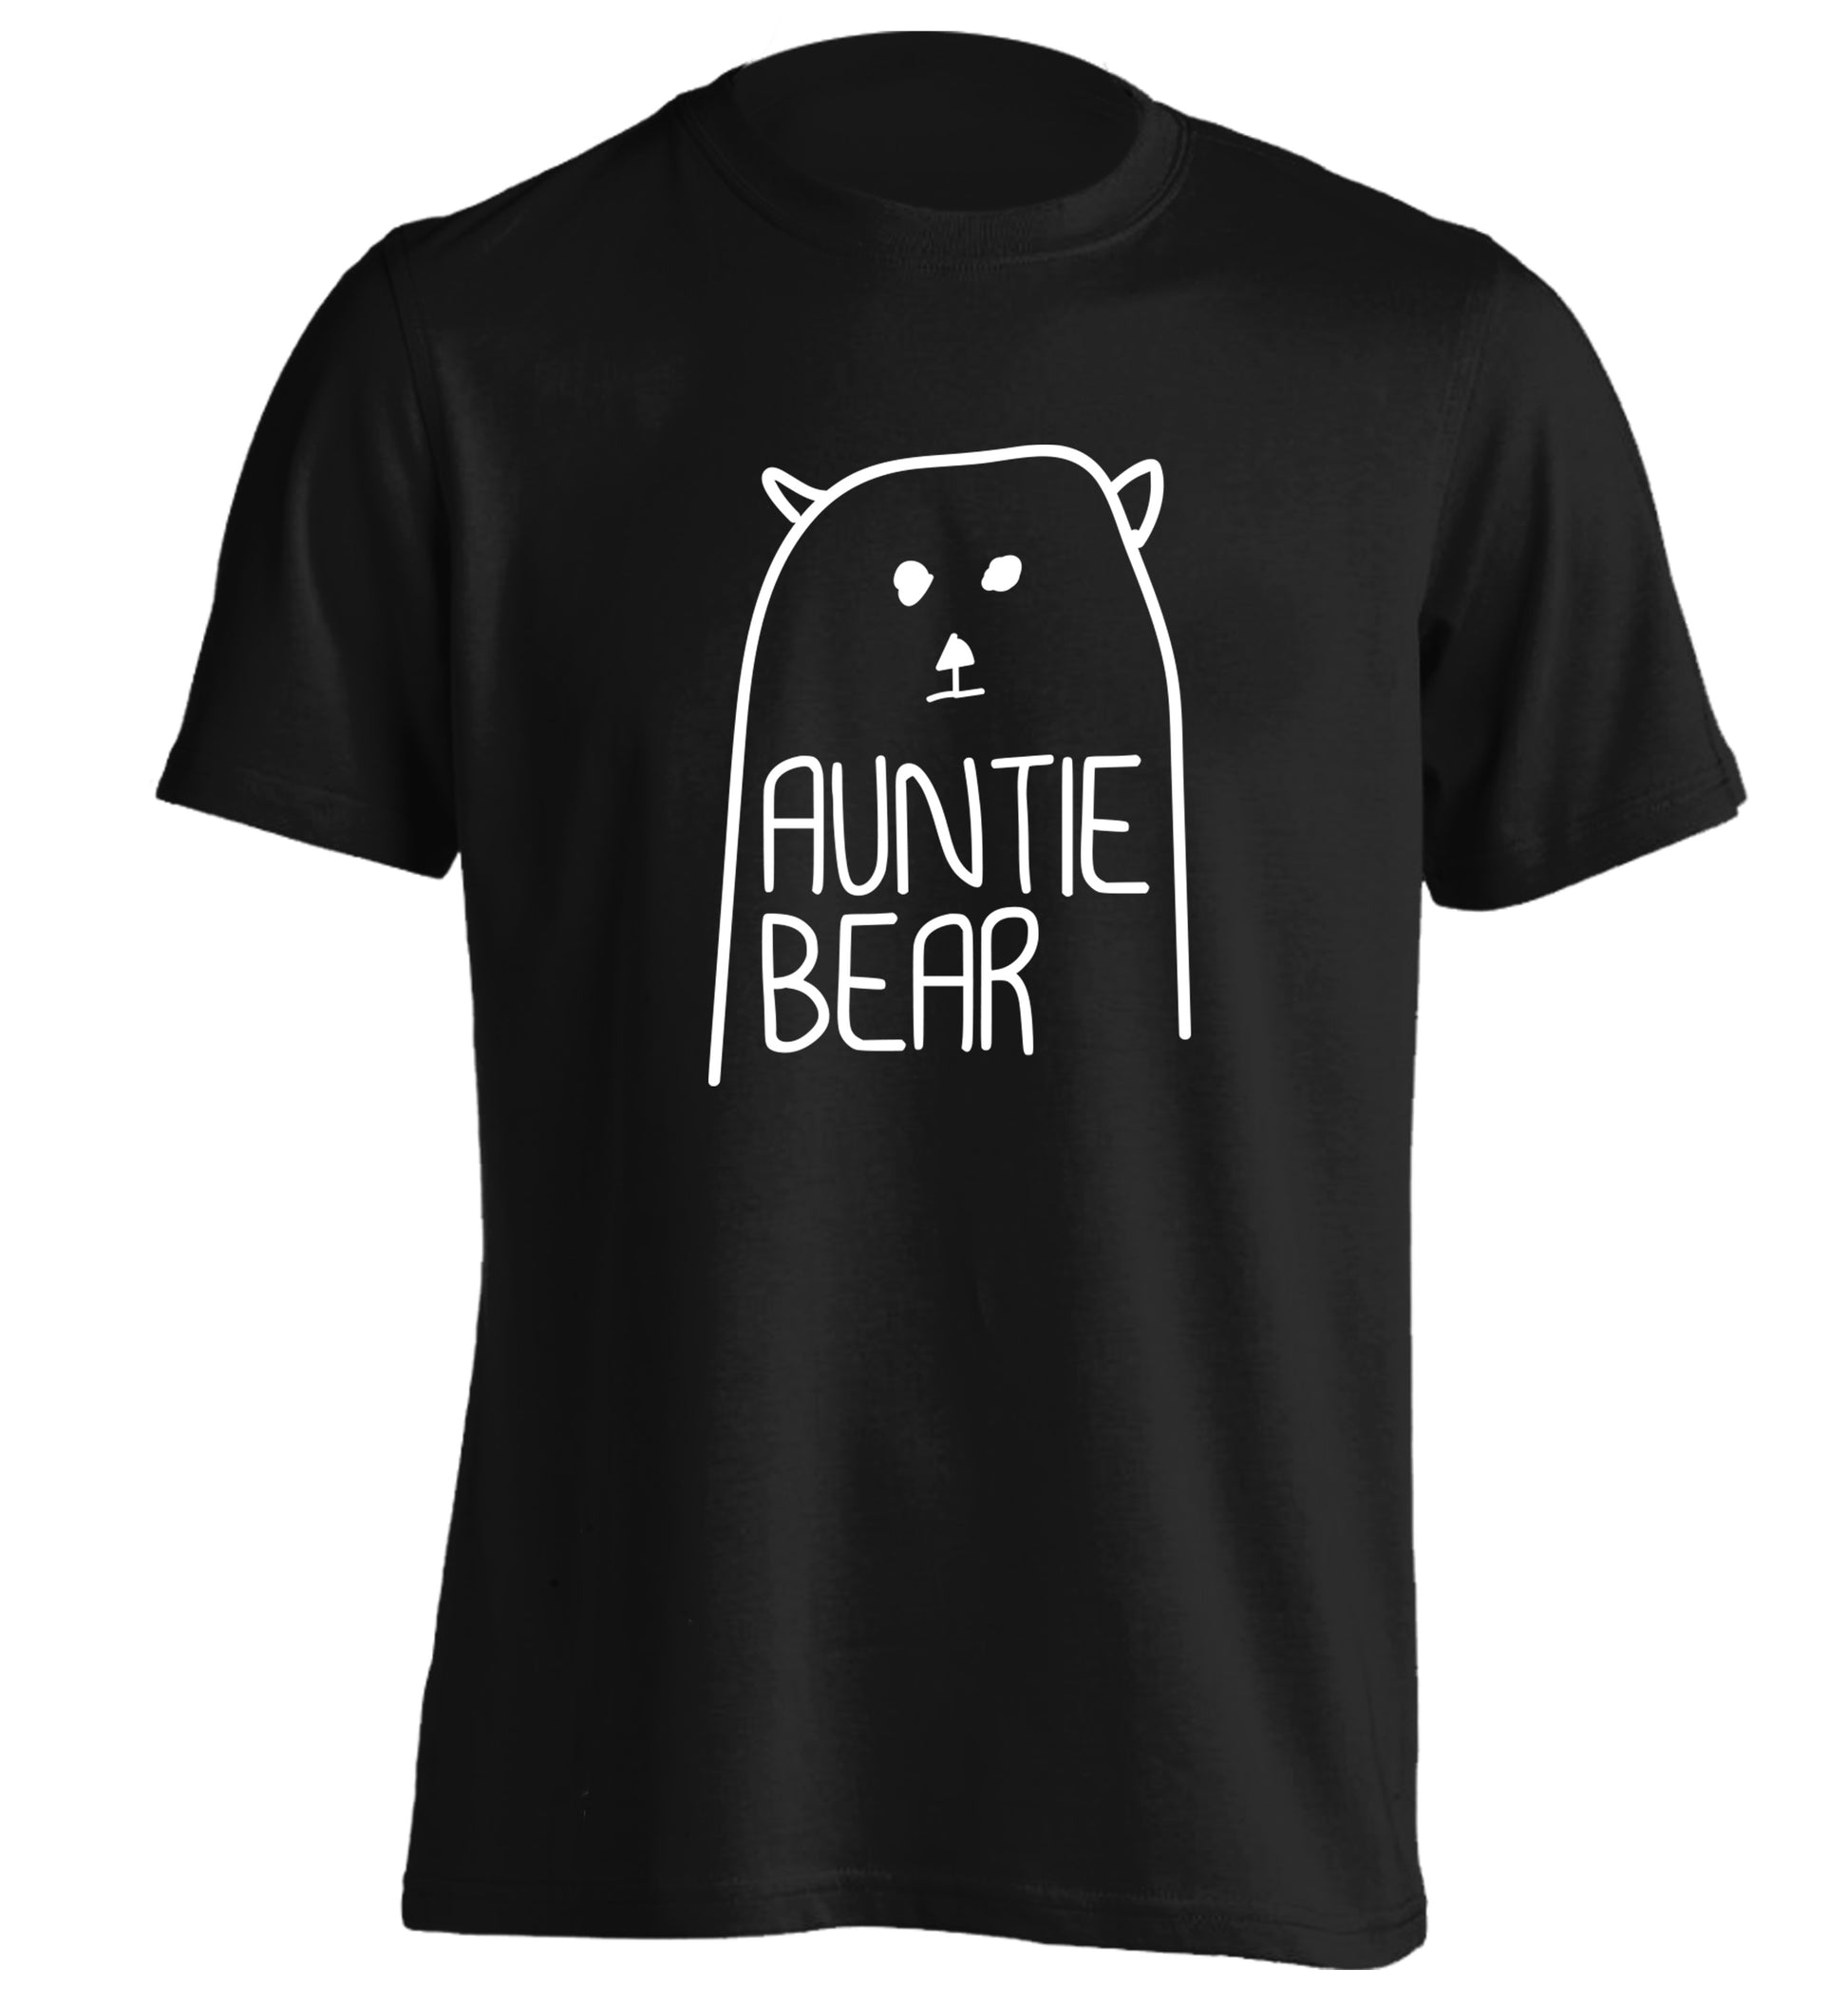 Auntie bear adults unisex black Tshirt 2XL